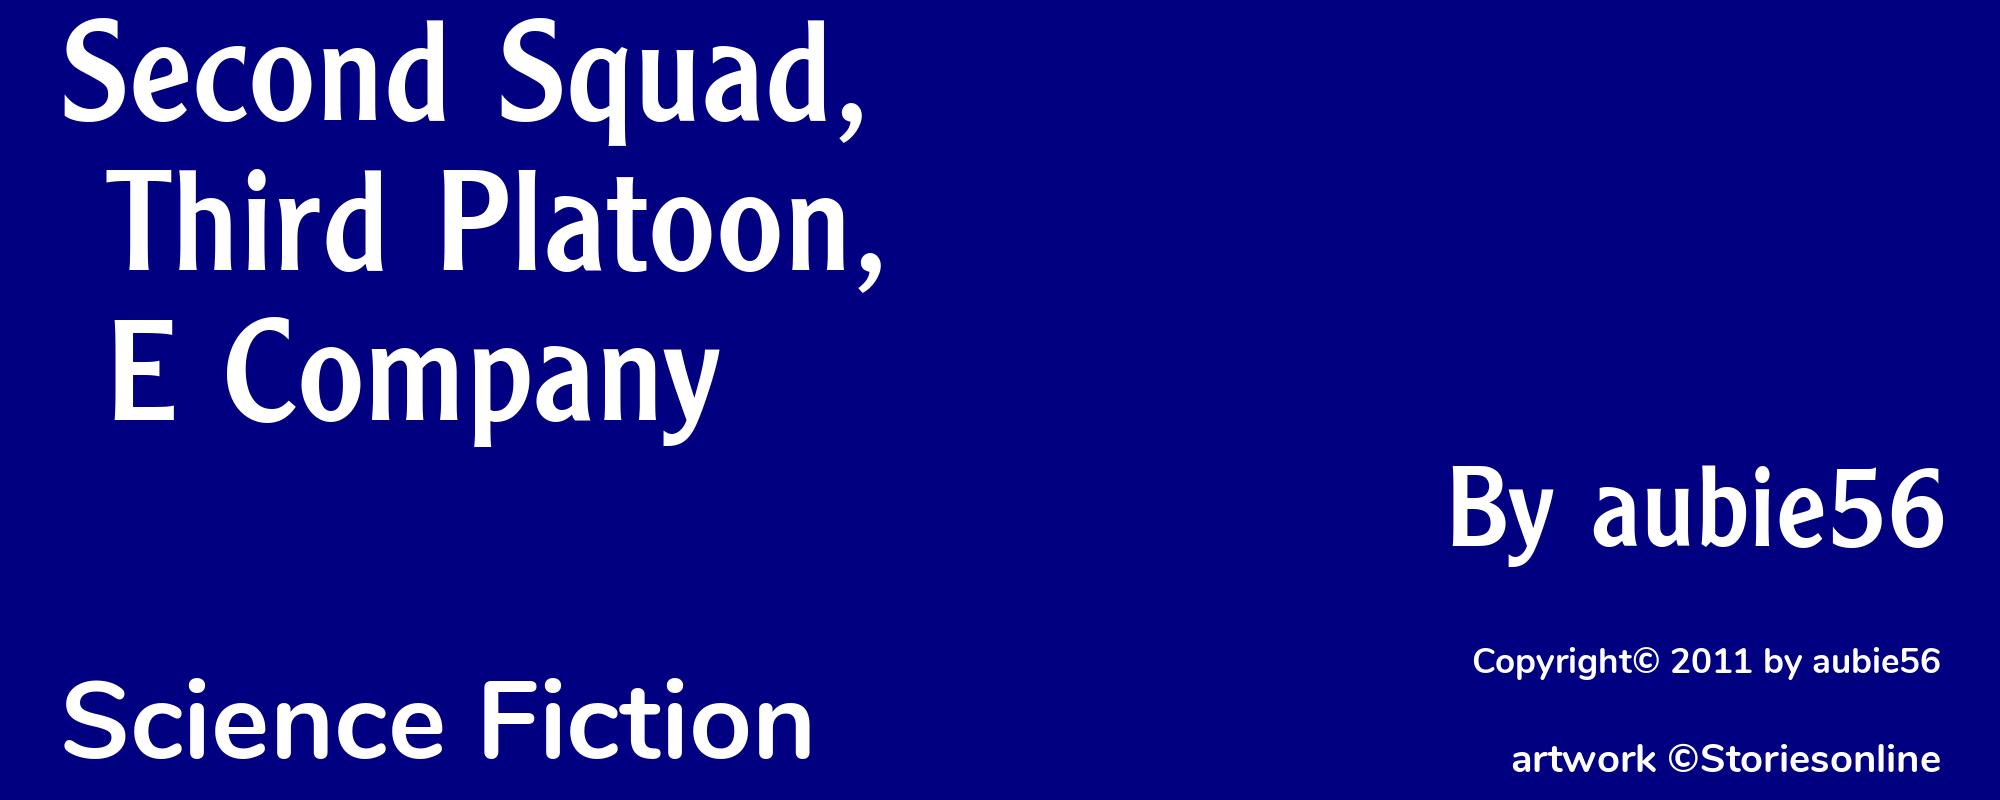 Second Squad, Third Platoon, E Company - Cover